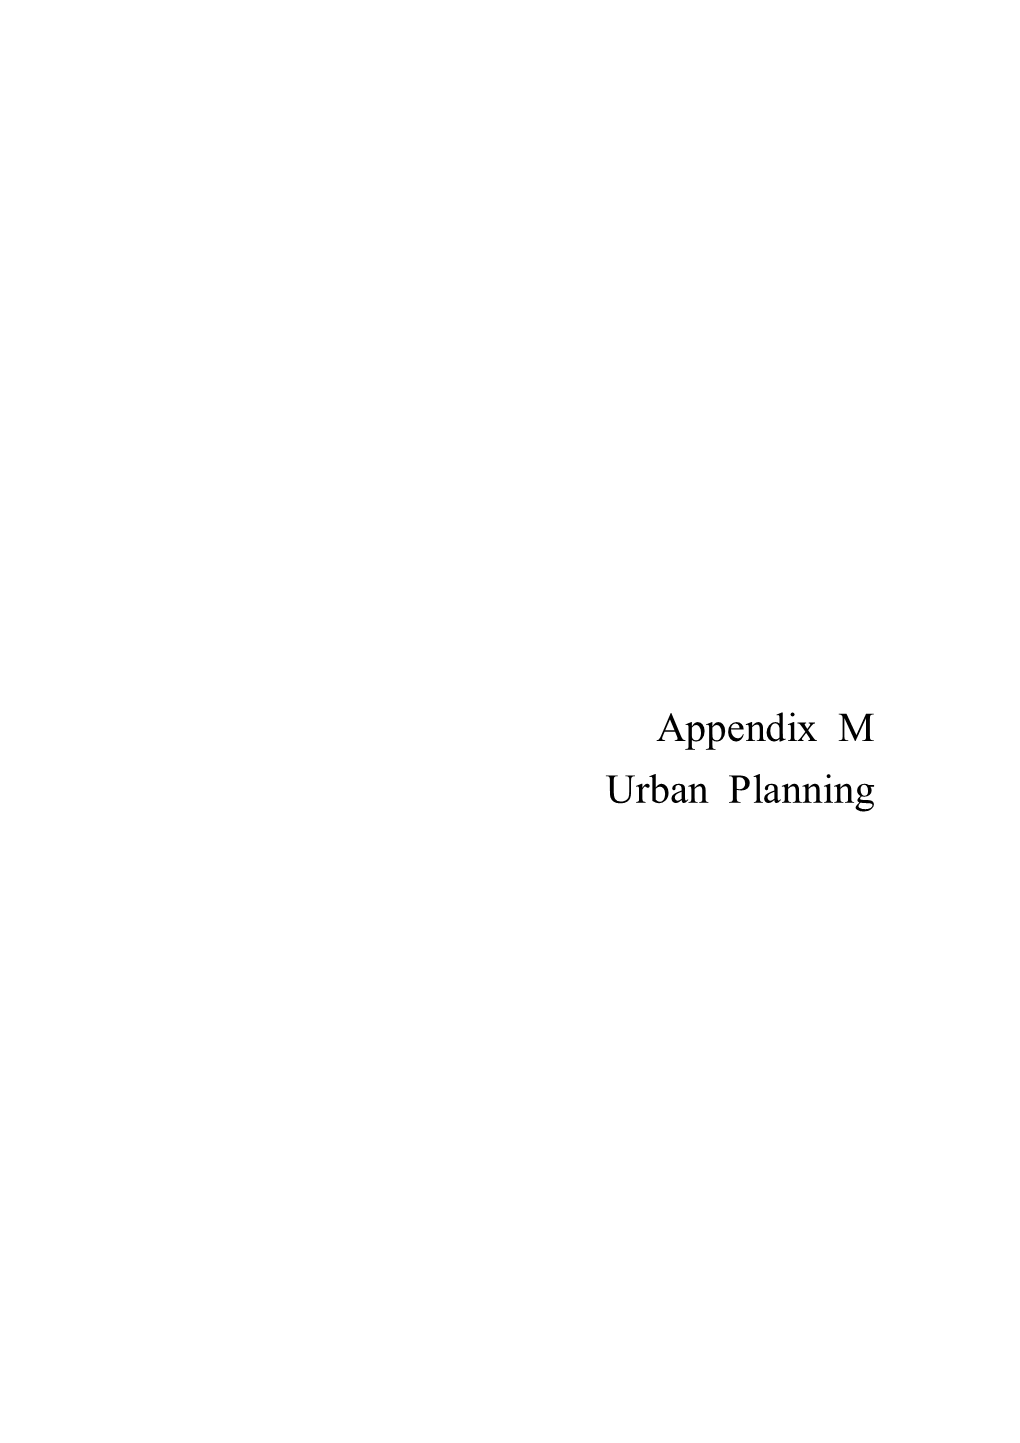 Appendix M Urban Planning